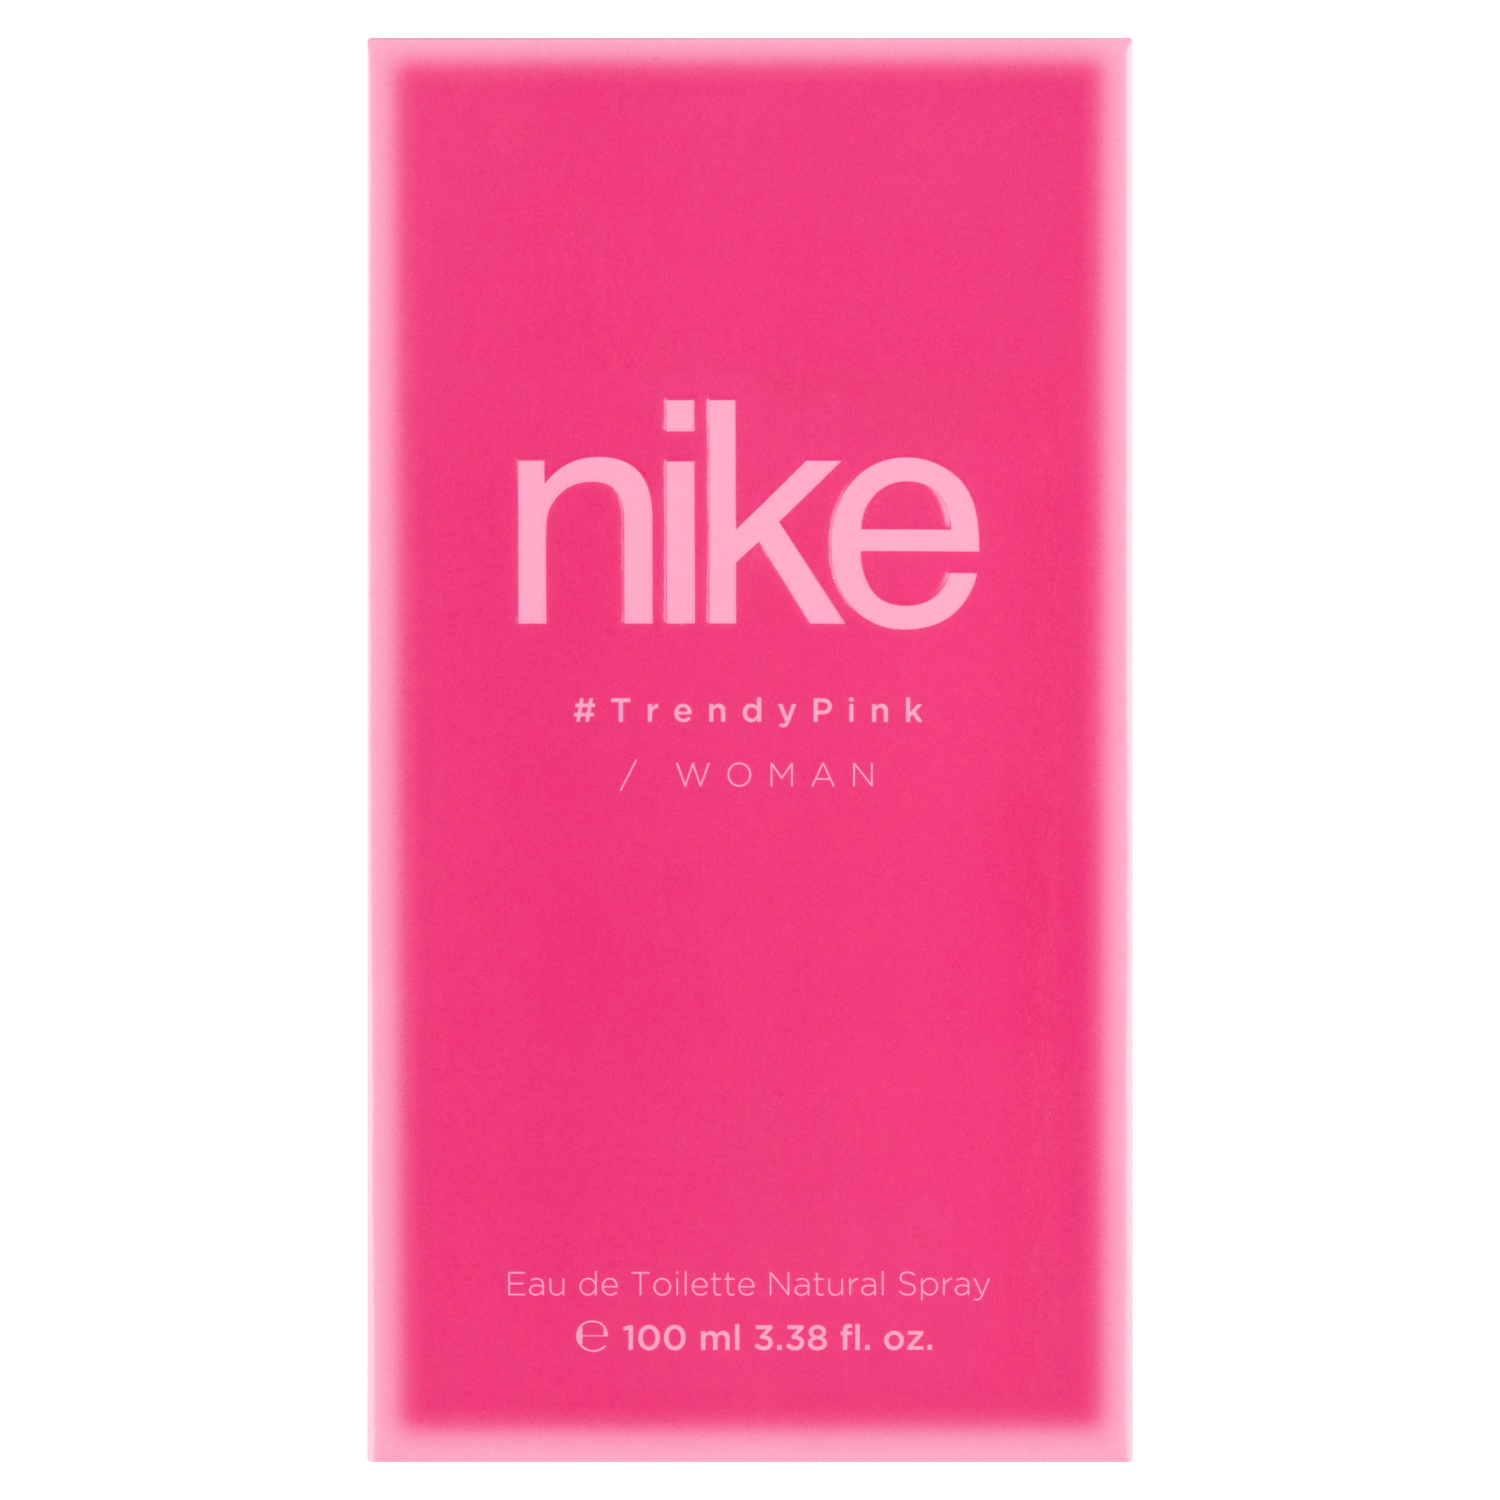 Натуральная женская туалетная вода Nike Trendy Pink, 100 мл туалетная вода tuttotondo chinootto 100 мл